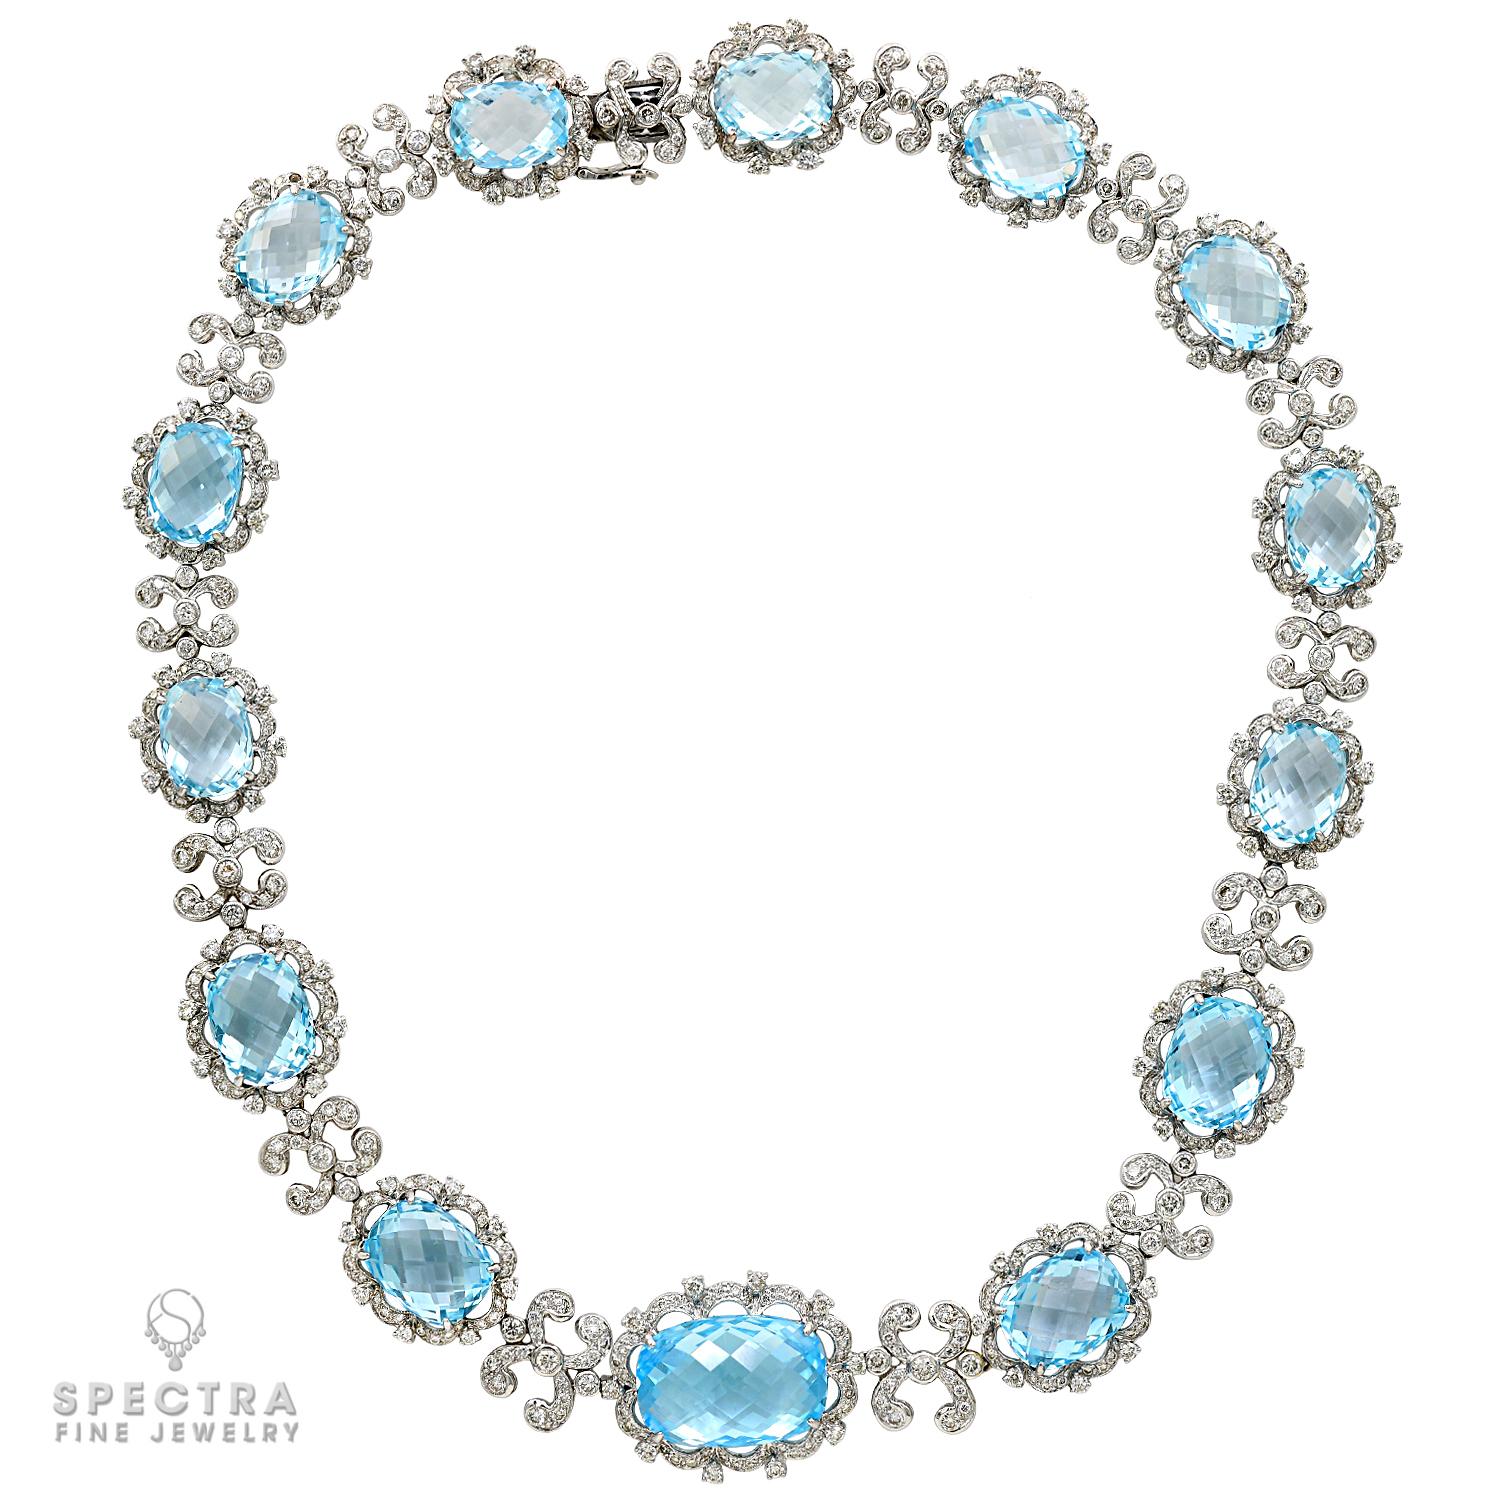 Le collier moderne en topaze bleue et diamant en or blanc 18 carats est un superbe bijou conçu pour ajouter de l'élégance et de la sophistication à n'importe quelle tenue. Le collier est réalisé en or blanc 18 carats, ce qui lui confère une finition